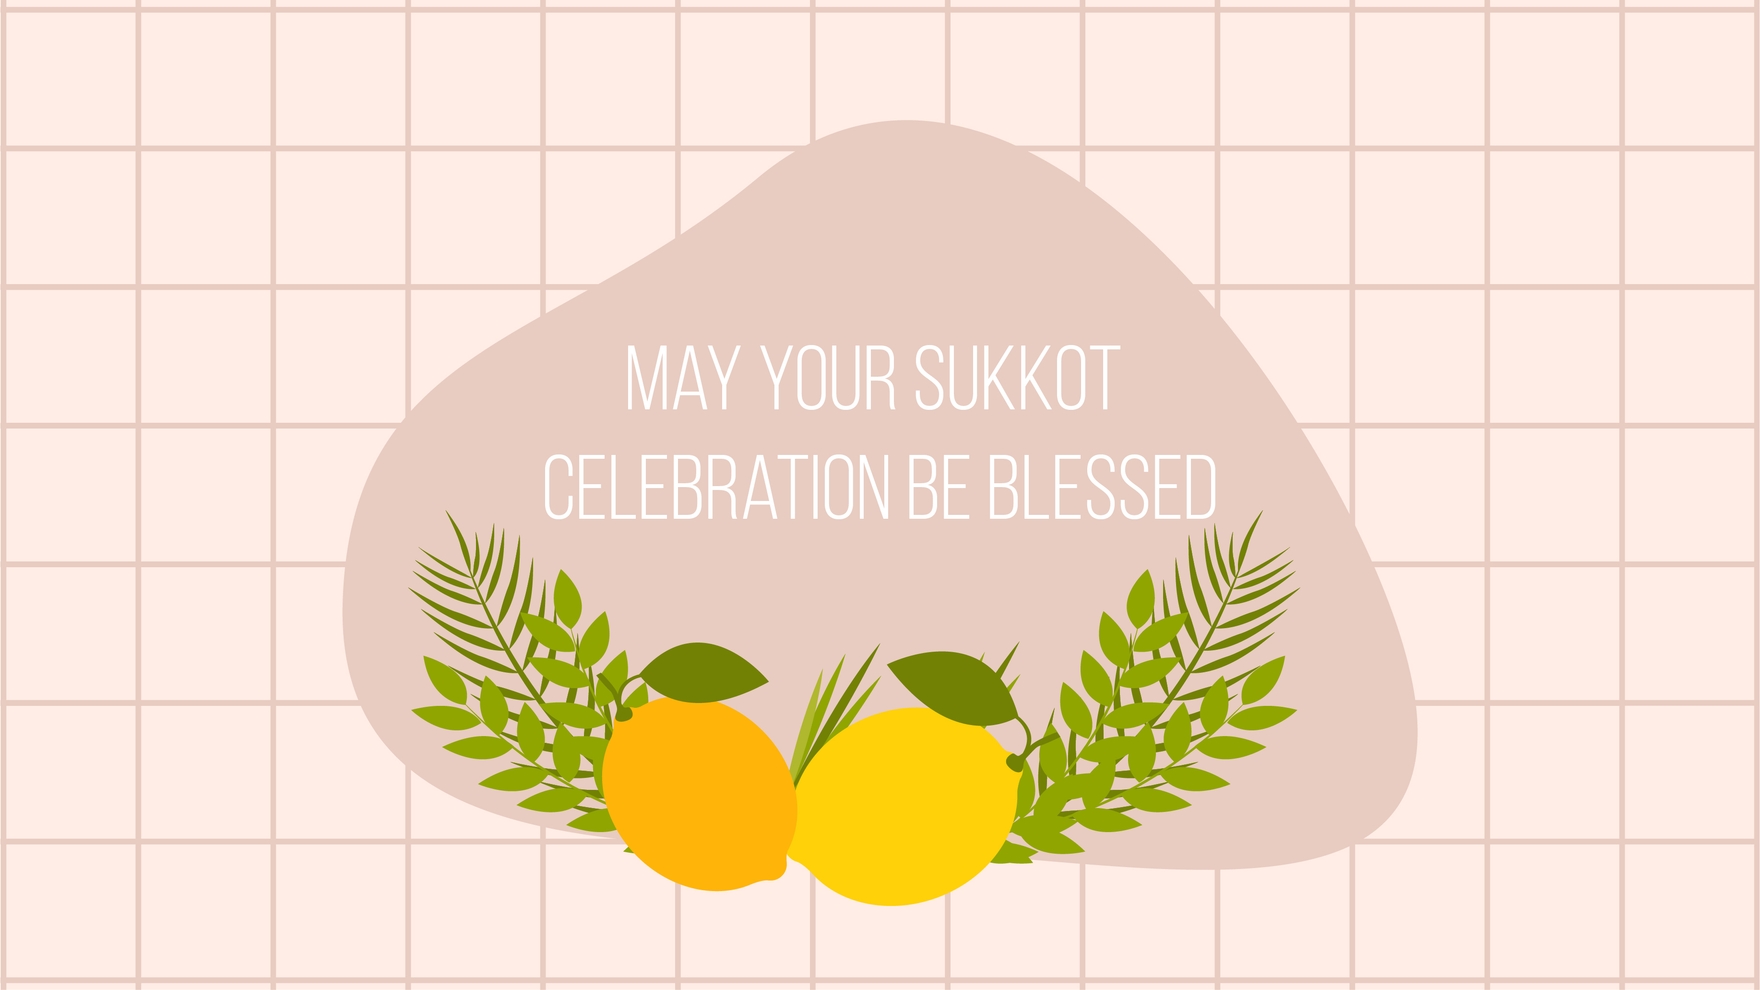 Sukkot Wishes Background